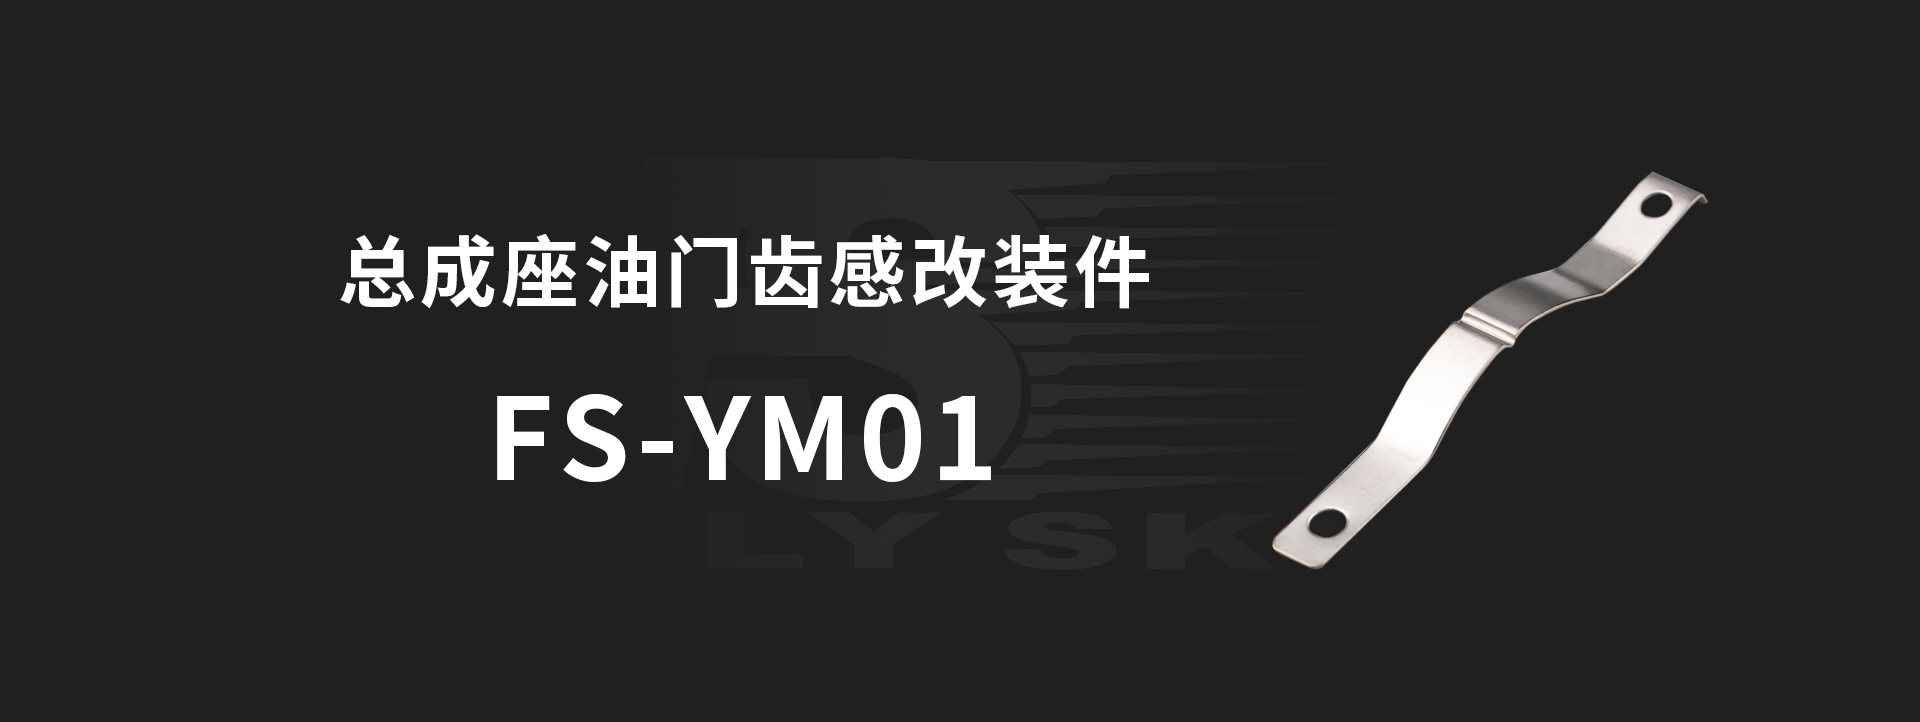 FS-YM01